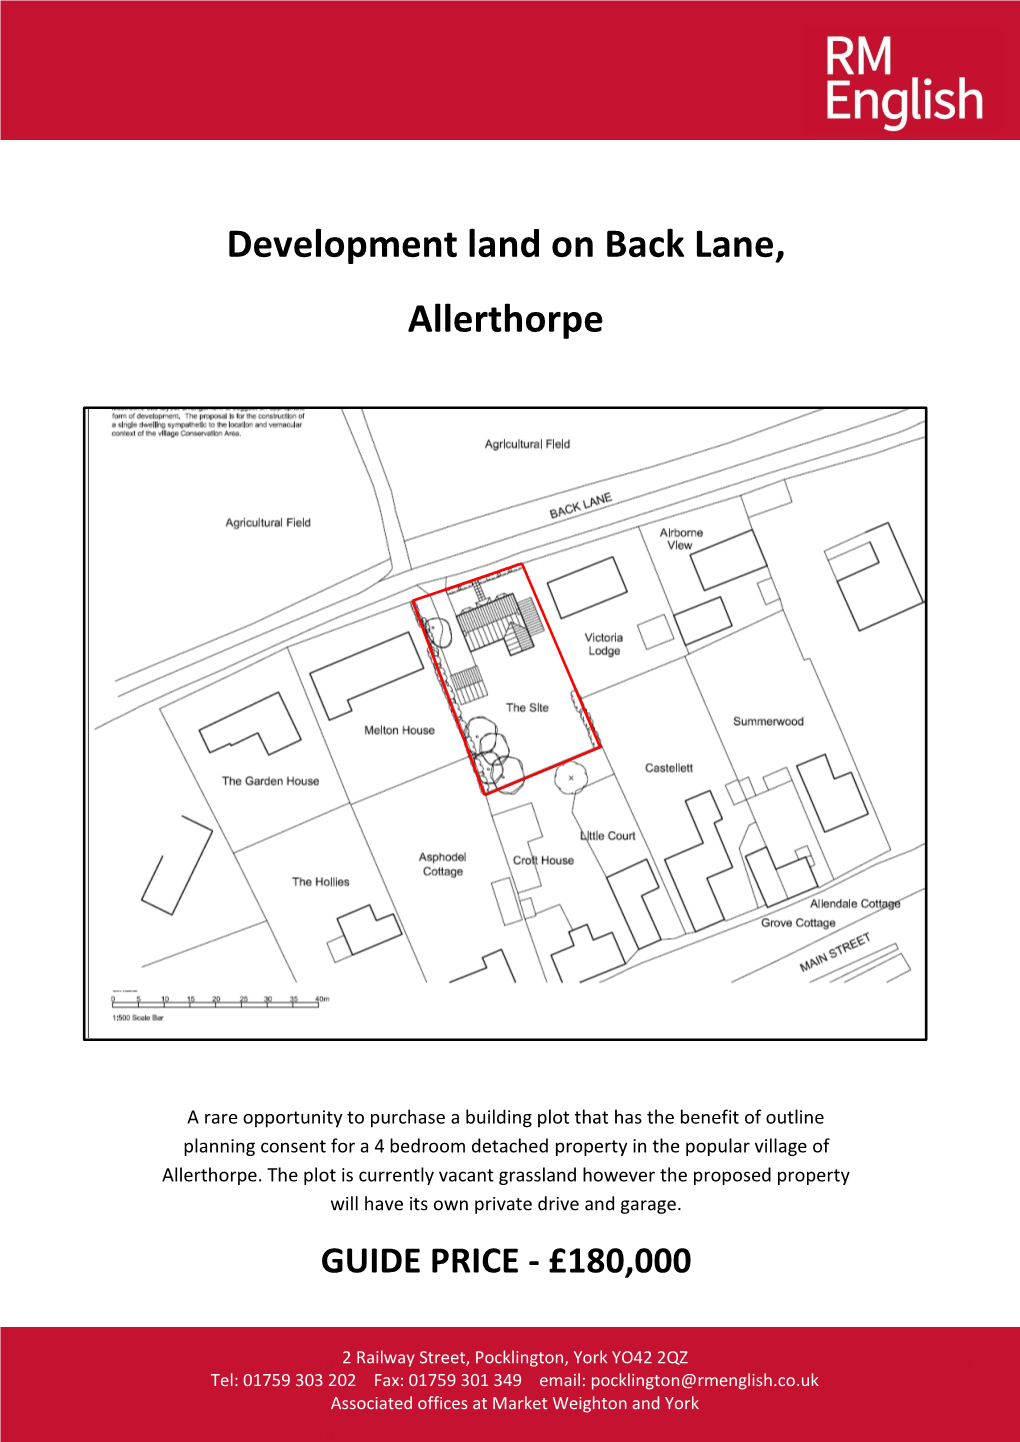 Development Land on Back Lane, Allerthorpe